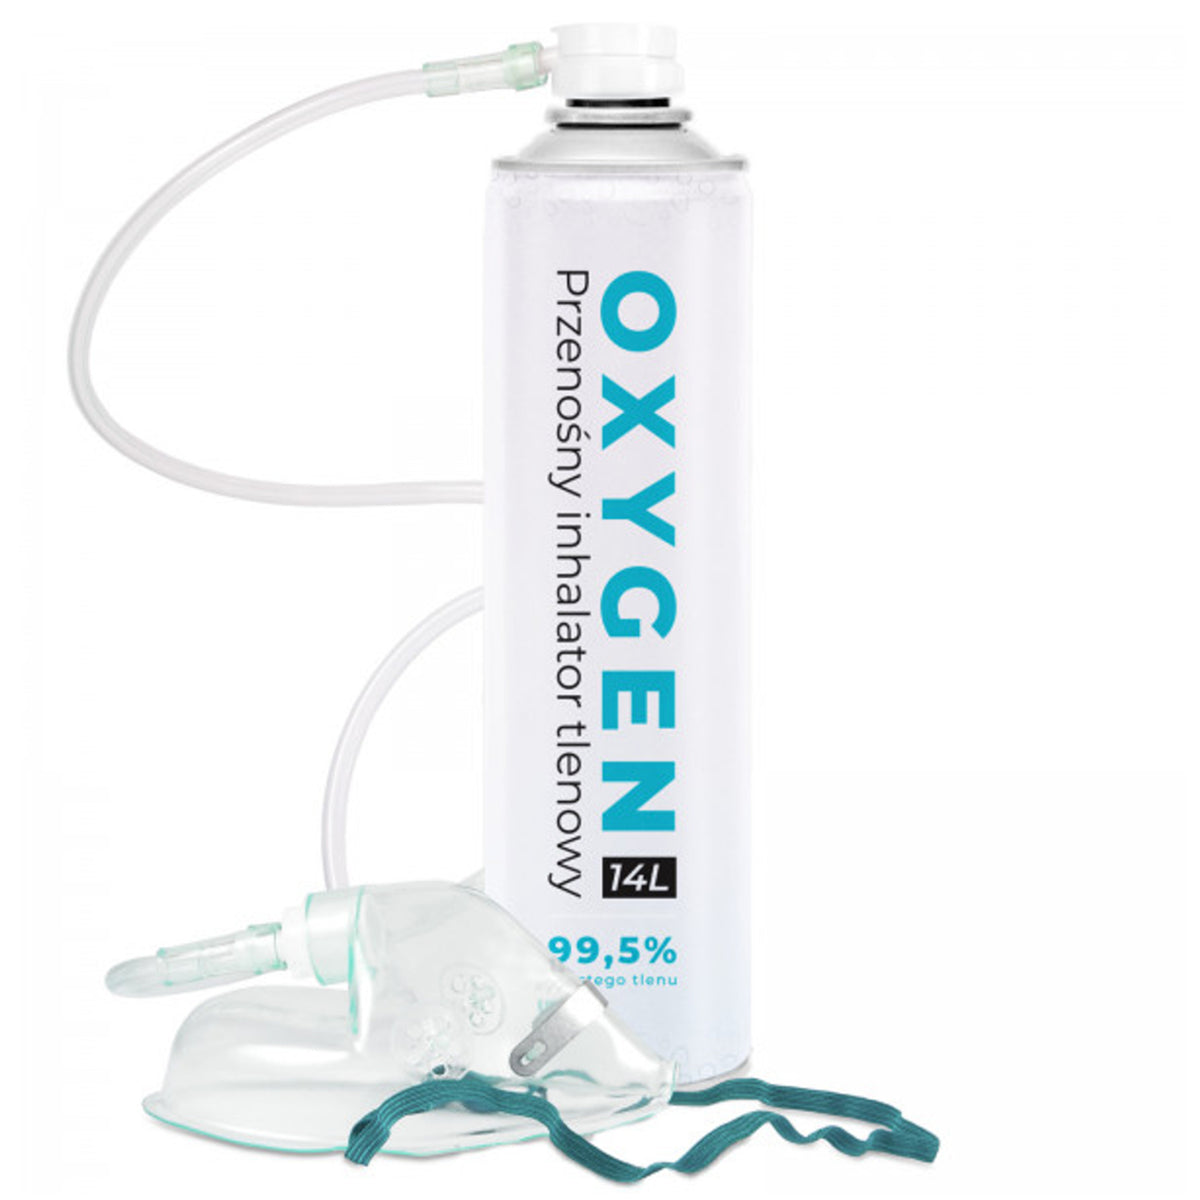 Sauerstoffflasche mit Maske, für Zuhause / Unterwegs, 14L Sauerstoff